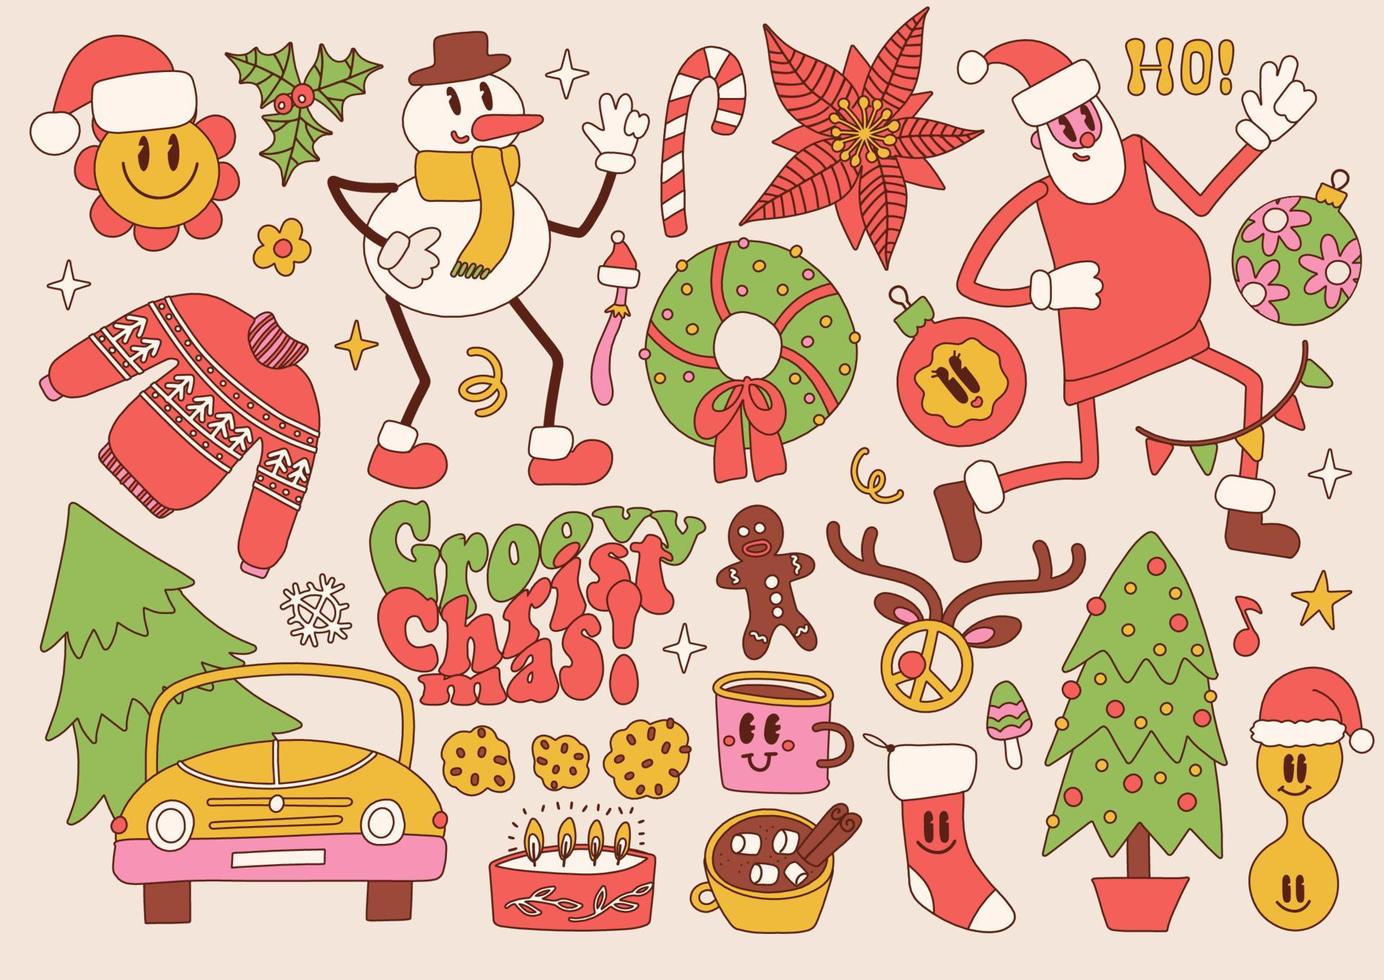 häftig hippie jul element och tecken uppsättning. santa claus, jul träd, gåvor, pepparkaka, fred tecken, snögubbe i trendig 70s 60s retro tecknad serie stil. vektor hand dragen kontur illustration.